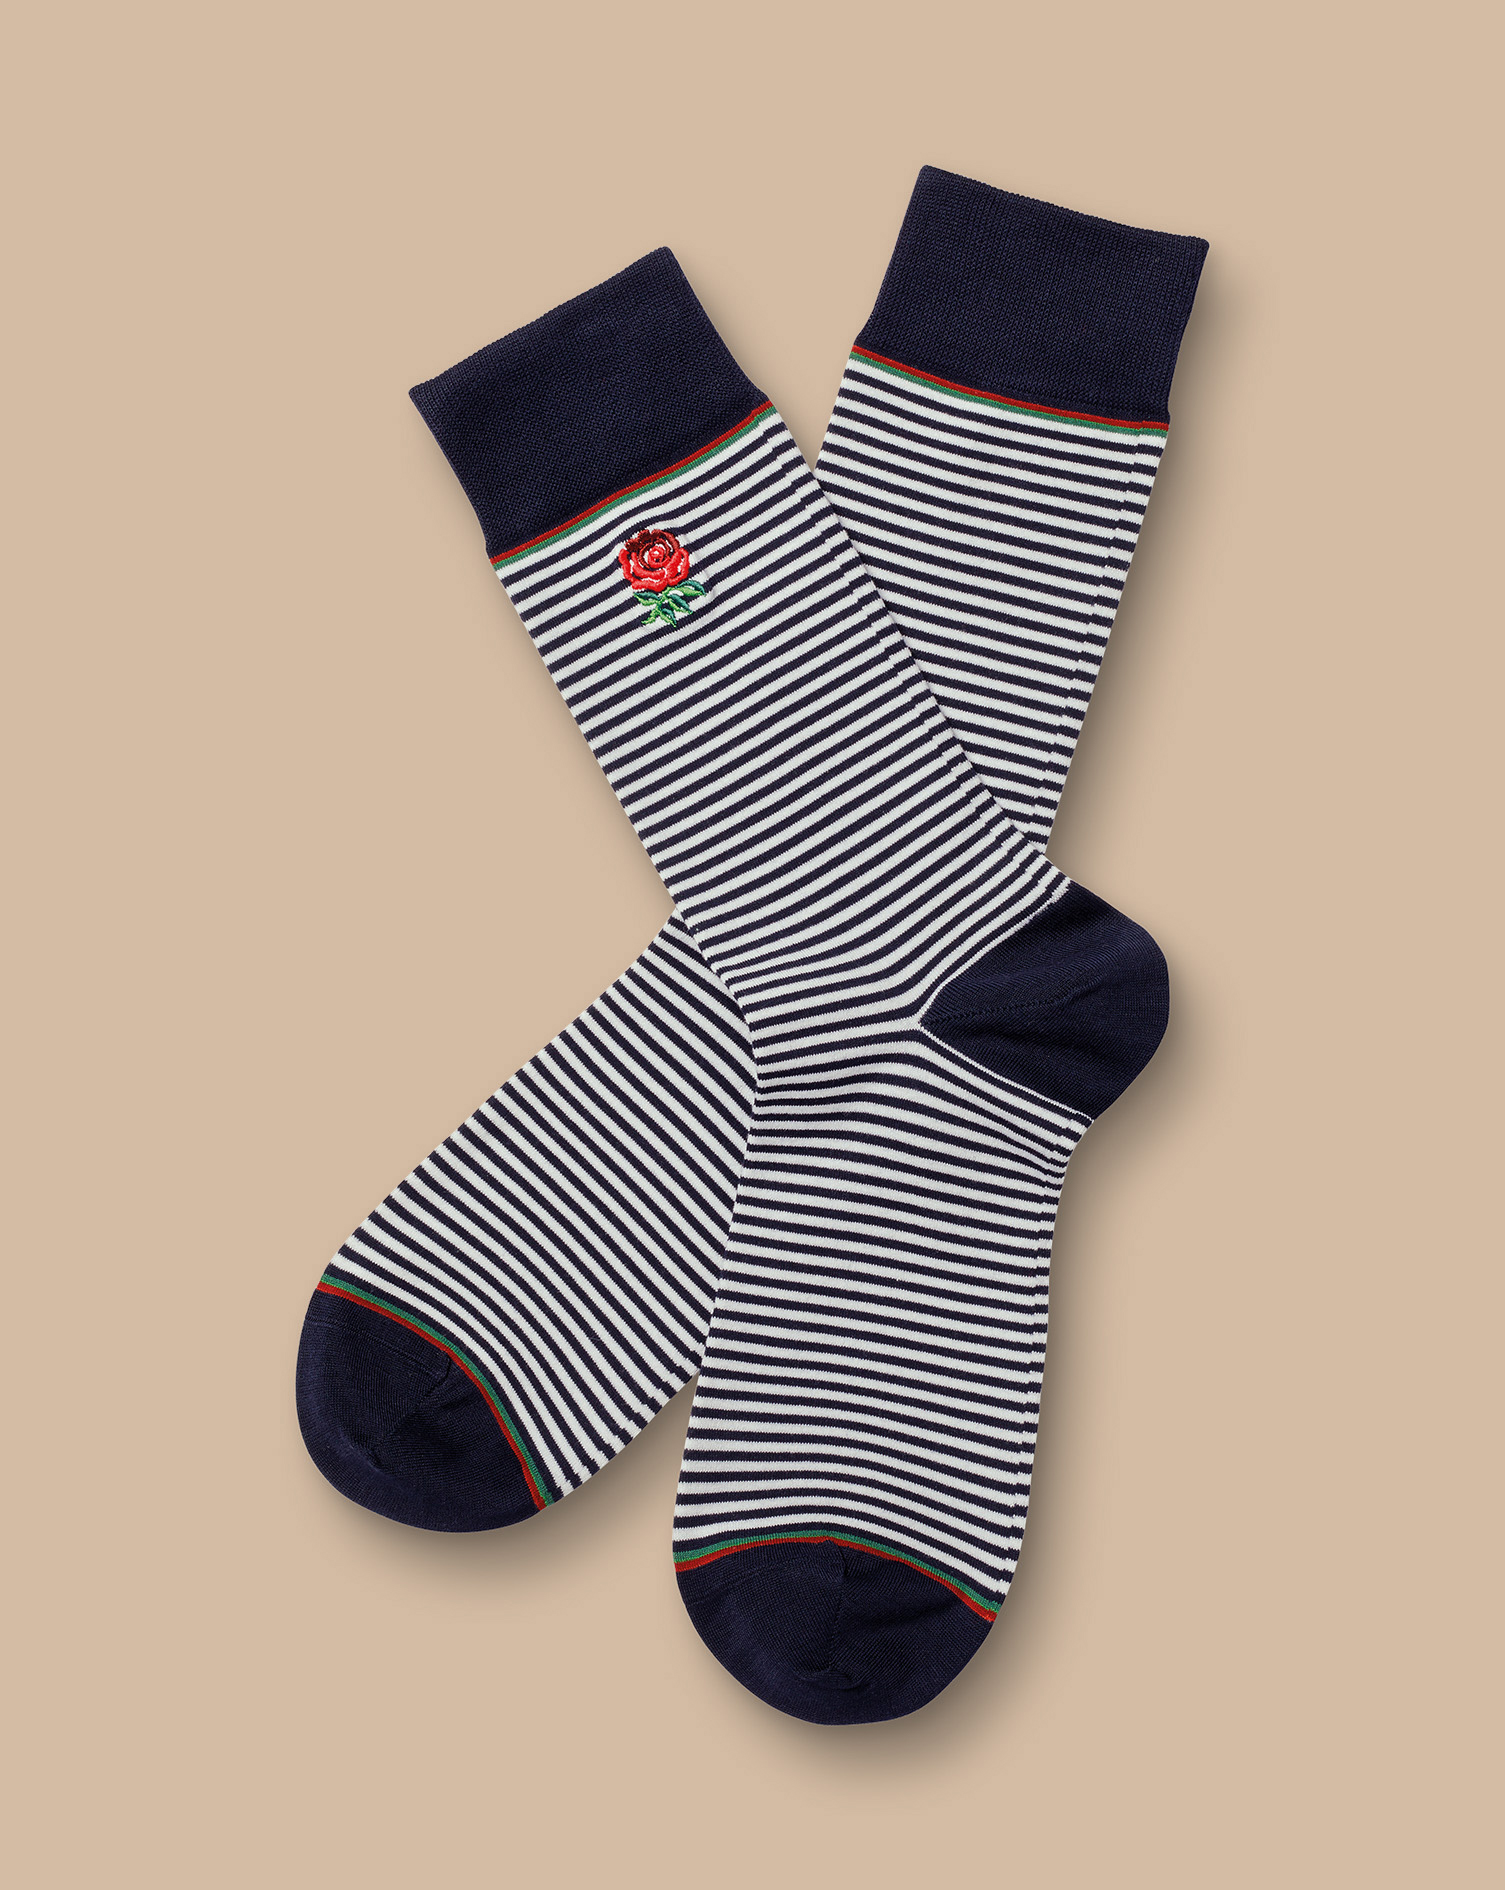 Men's Charles Tyrwhitt England Rugby Fine Stripe Socks - Navy & White Blue Size Large Cotton
